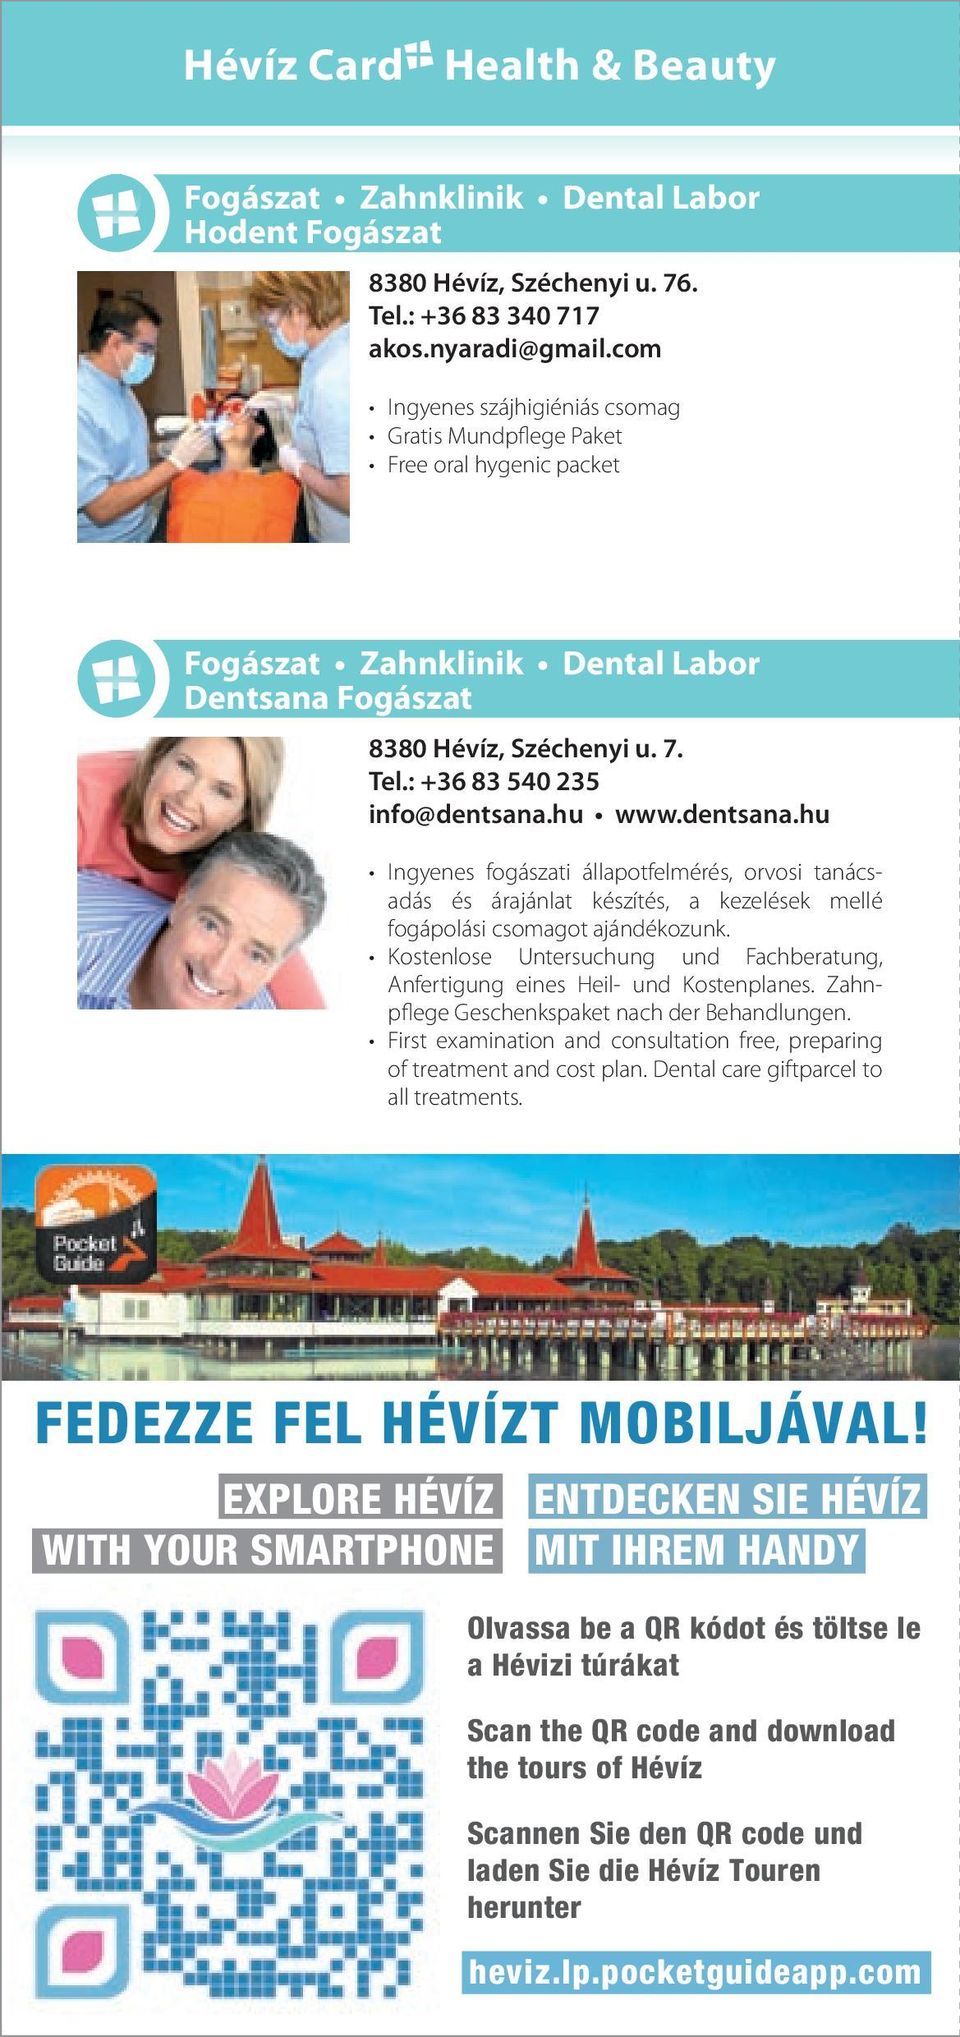 hu www.dentsana.hu Ingyenes fogászati állapotfelmérés, orvosi tanácsadás és árajánlat készítés, a kezelések mellé fogápolási csomagot ajándékozunk.